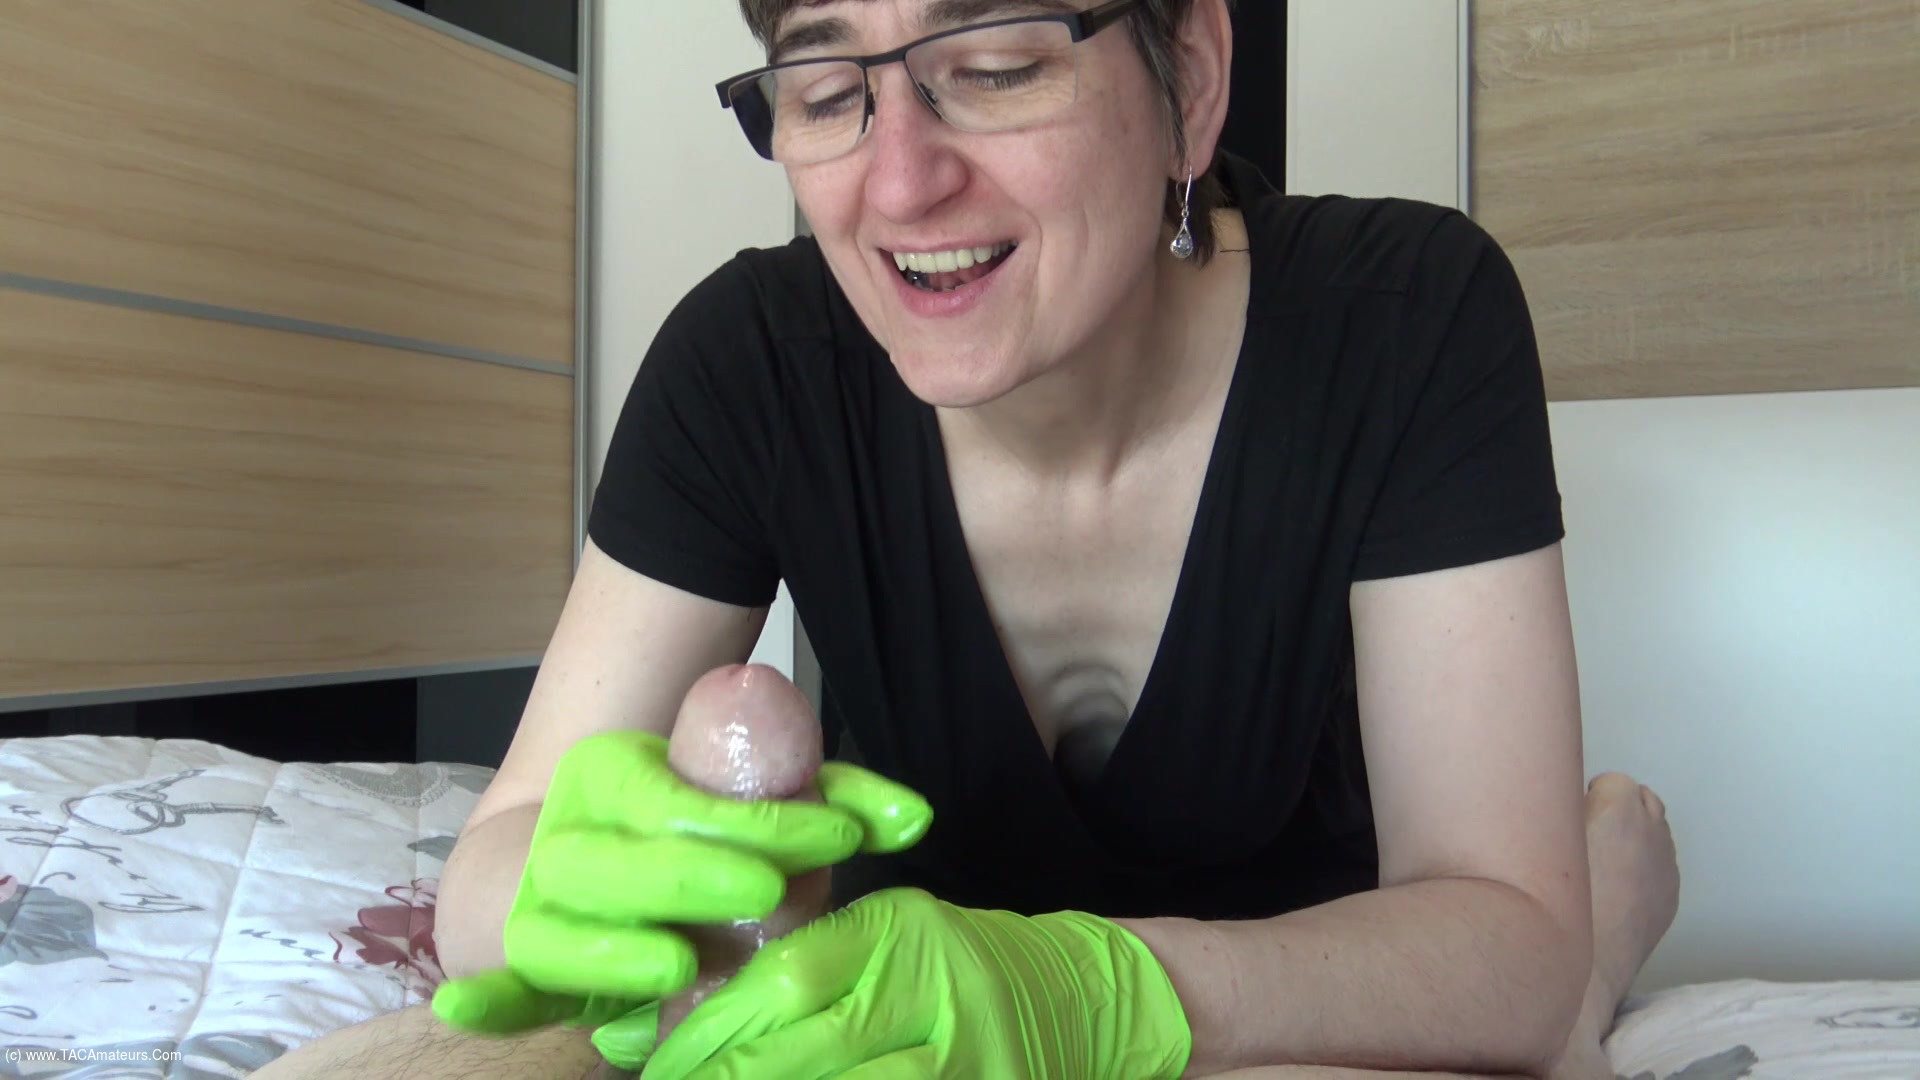 Hot Milf - Green Gloves Covered In Cum